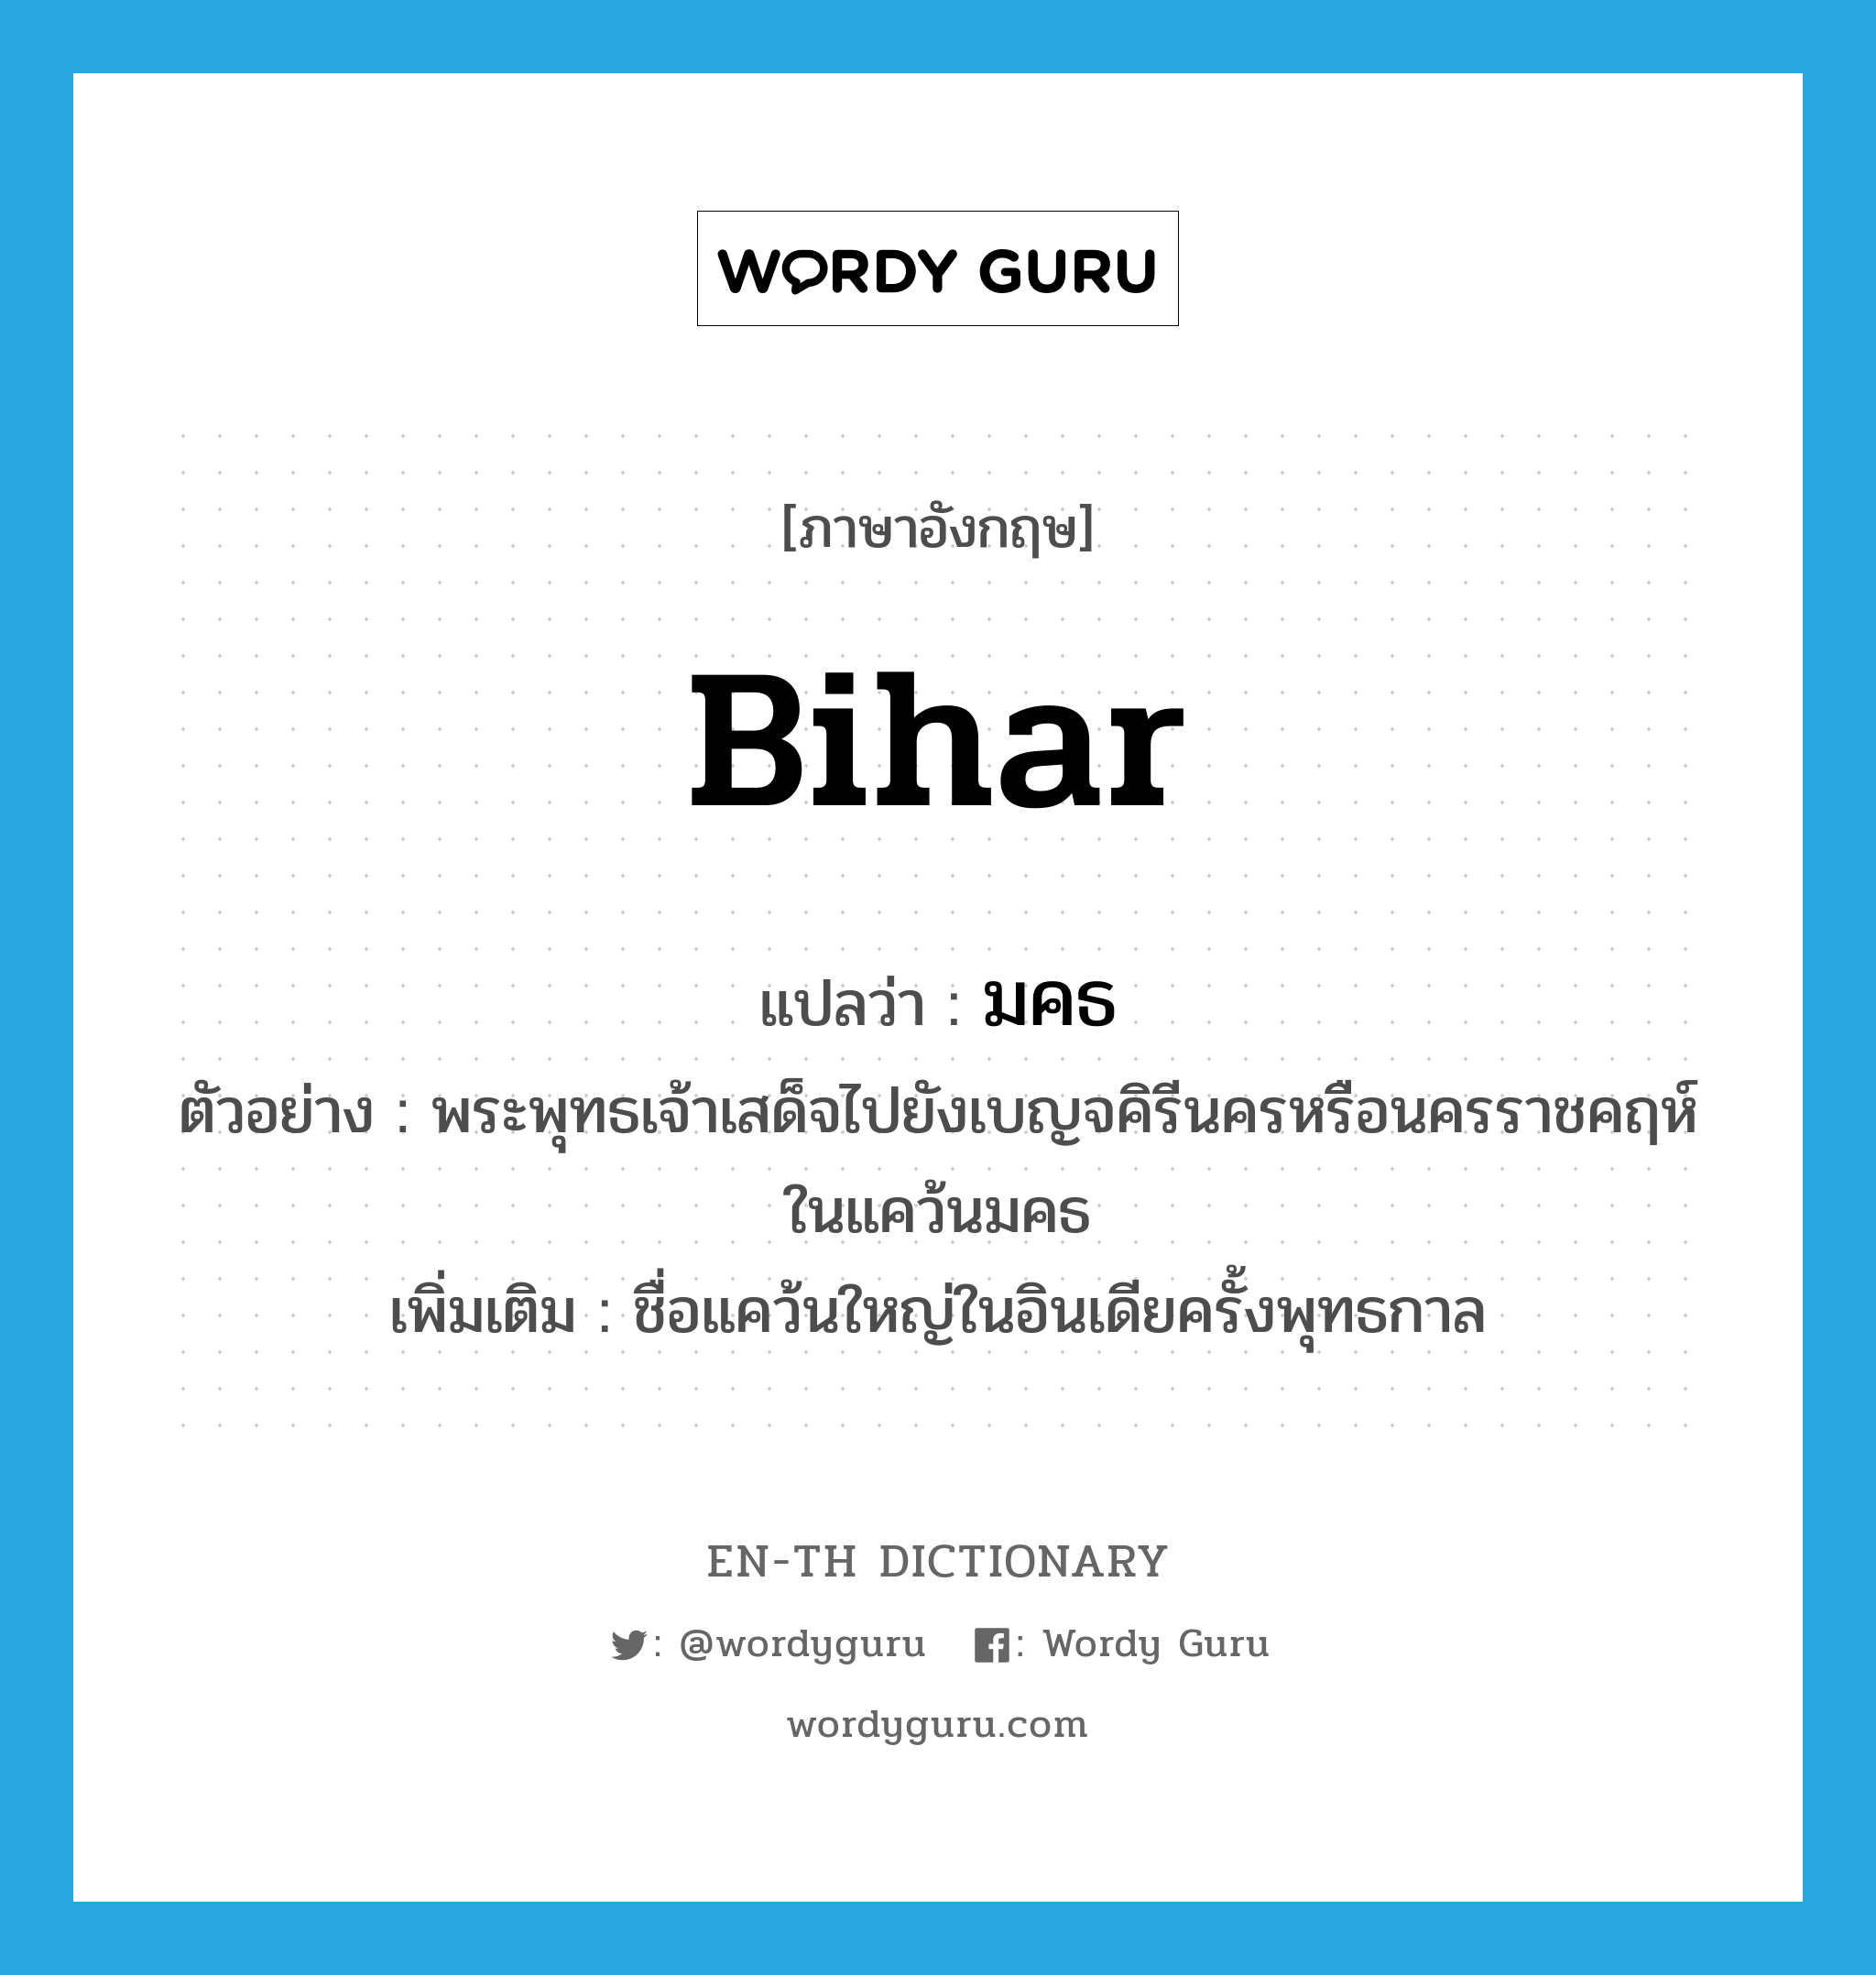 Bihar แปลว่า?, คำศัพท์ภาษาอังกฤษ Bihar แปลว่า มคธ ประเภท N ตัวอย่าง พระพุทธเจ้าเสด็จไปยังเบญจคิรีนครหรือนครราชคฤห์ในแคว้นมคธ เพิ่มเติม ชื่อแคว้นใหญ่ในอินเดียครั้งพุทธกาล หมวด N